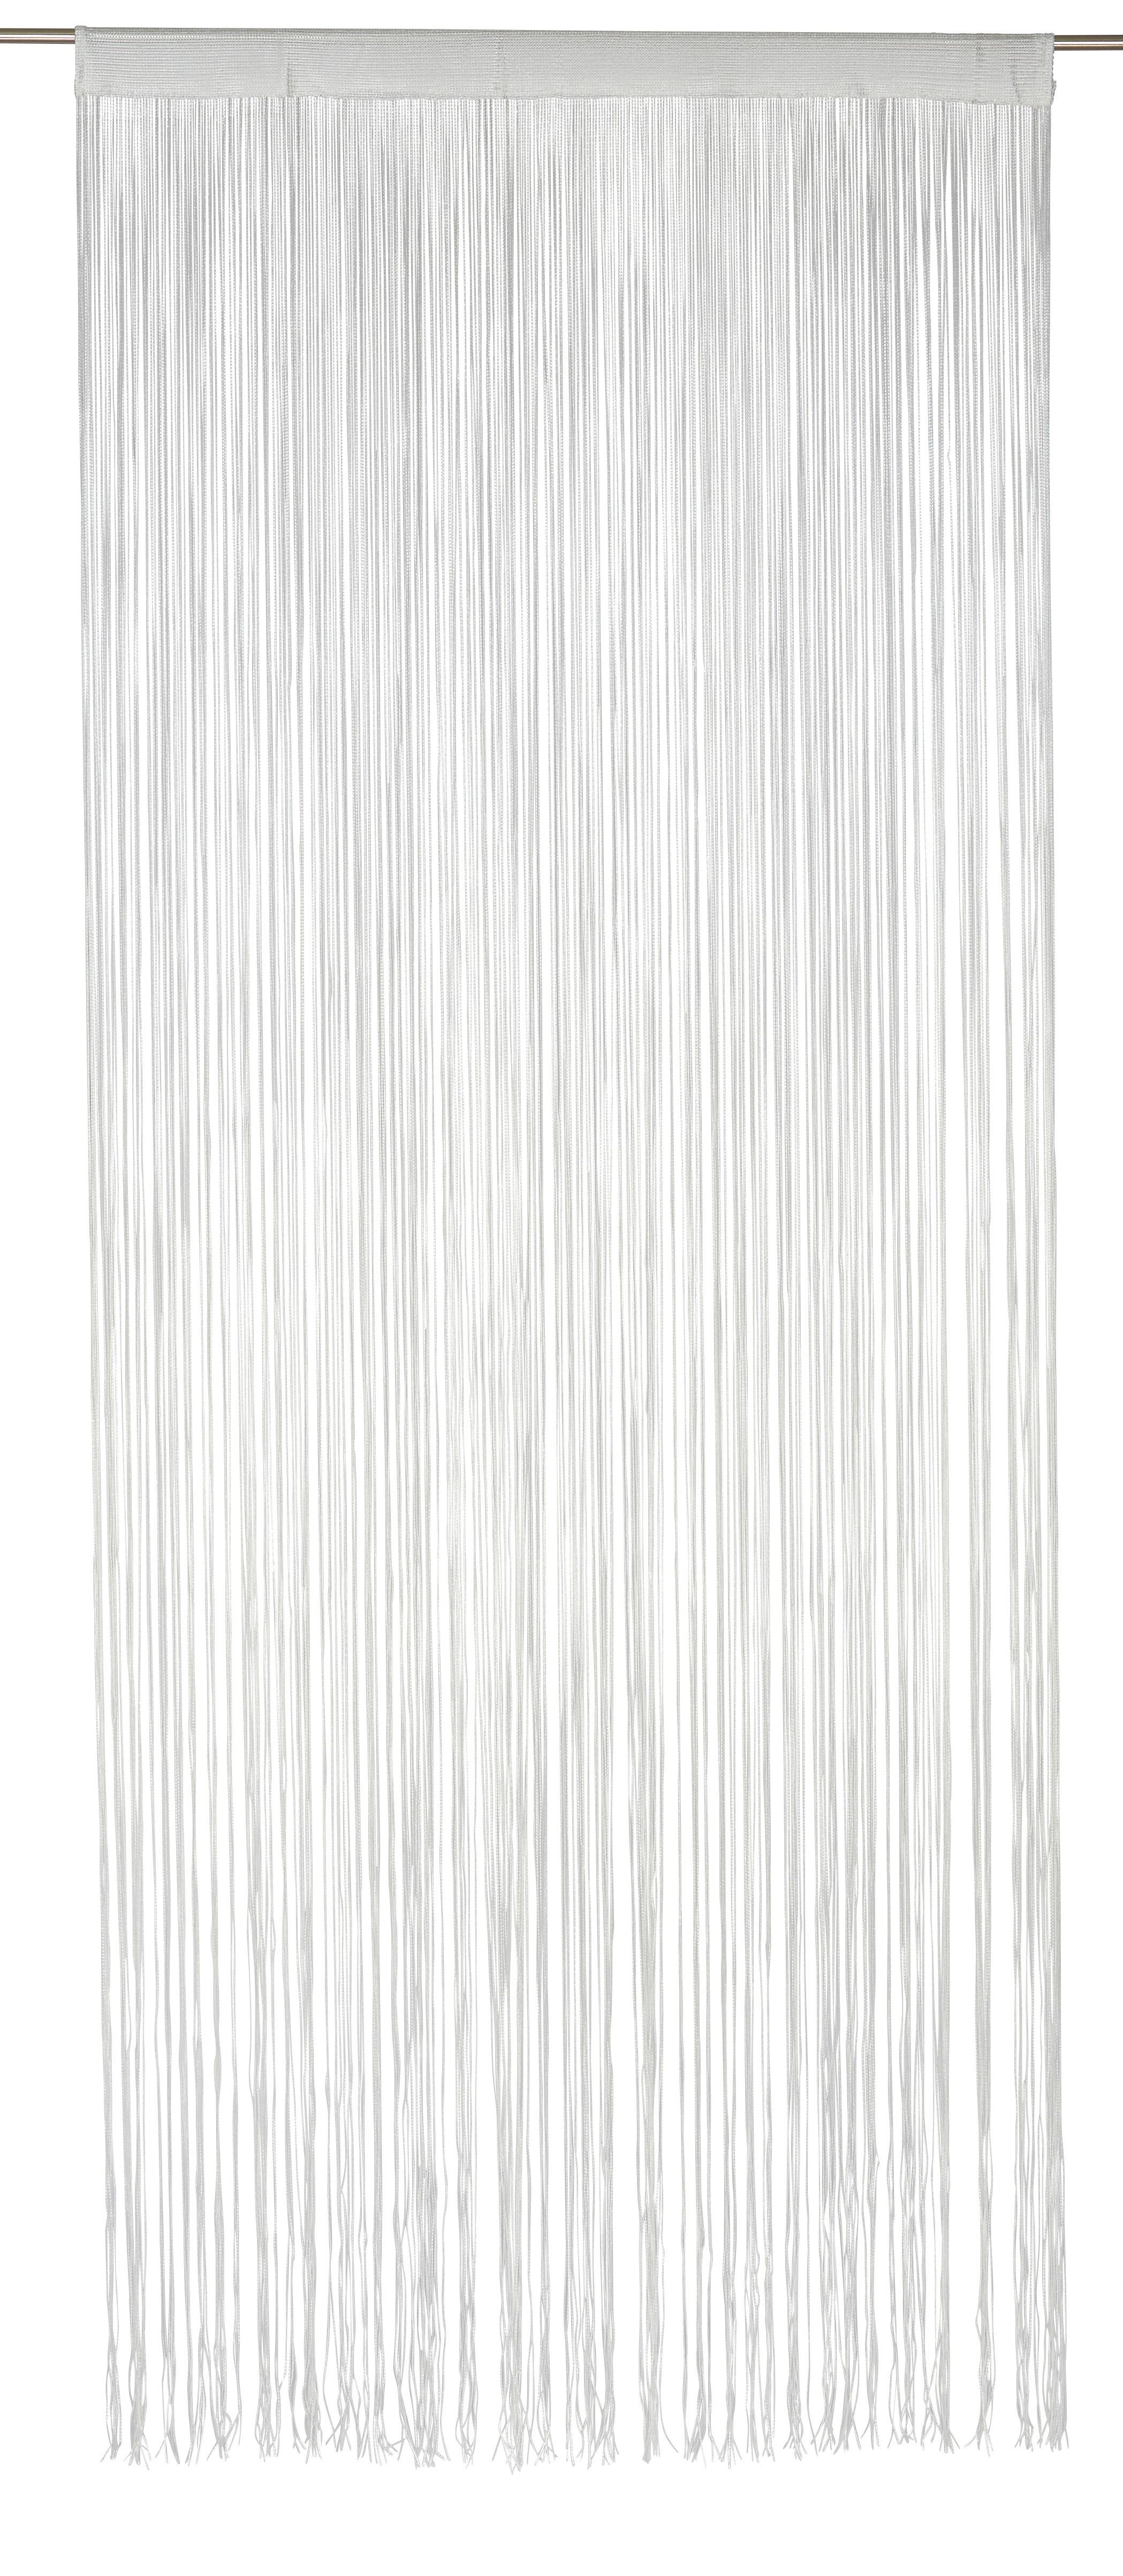 Fadenvorhang Stangendurchzug Marietta B: 90cm, Weiß - Weiß, KONVENTIONELL, Textil (90/245cm) - Ombra